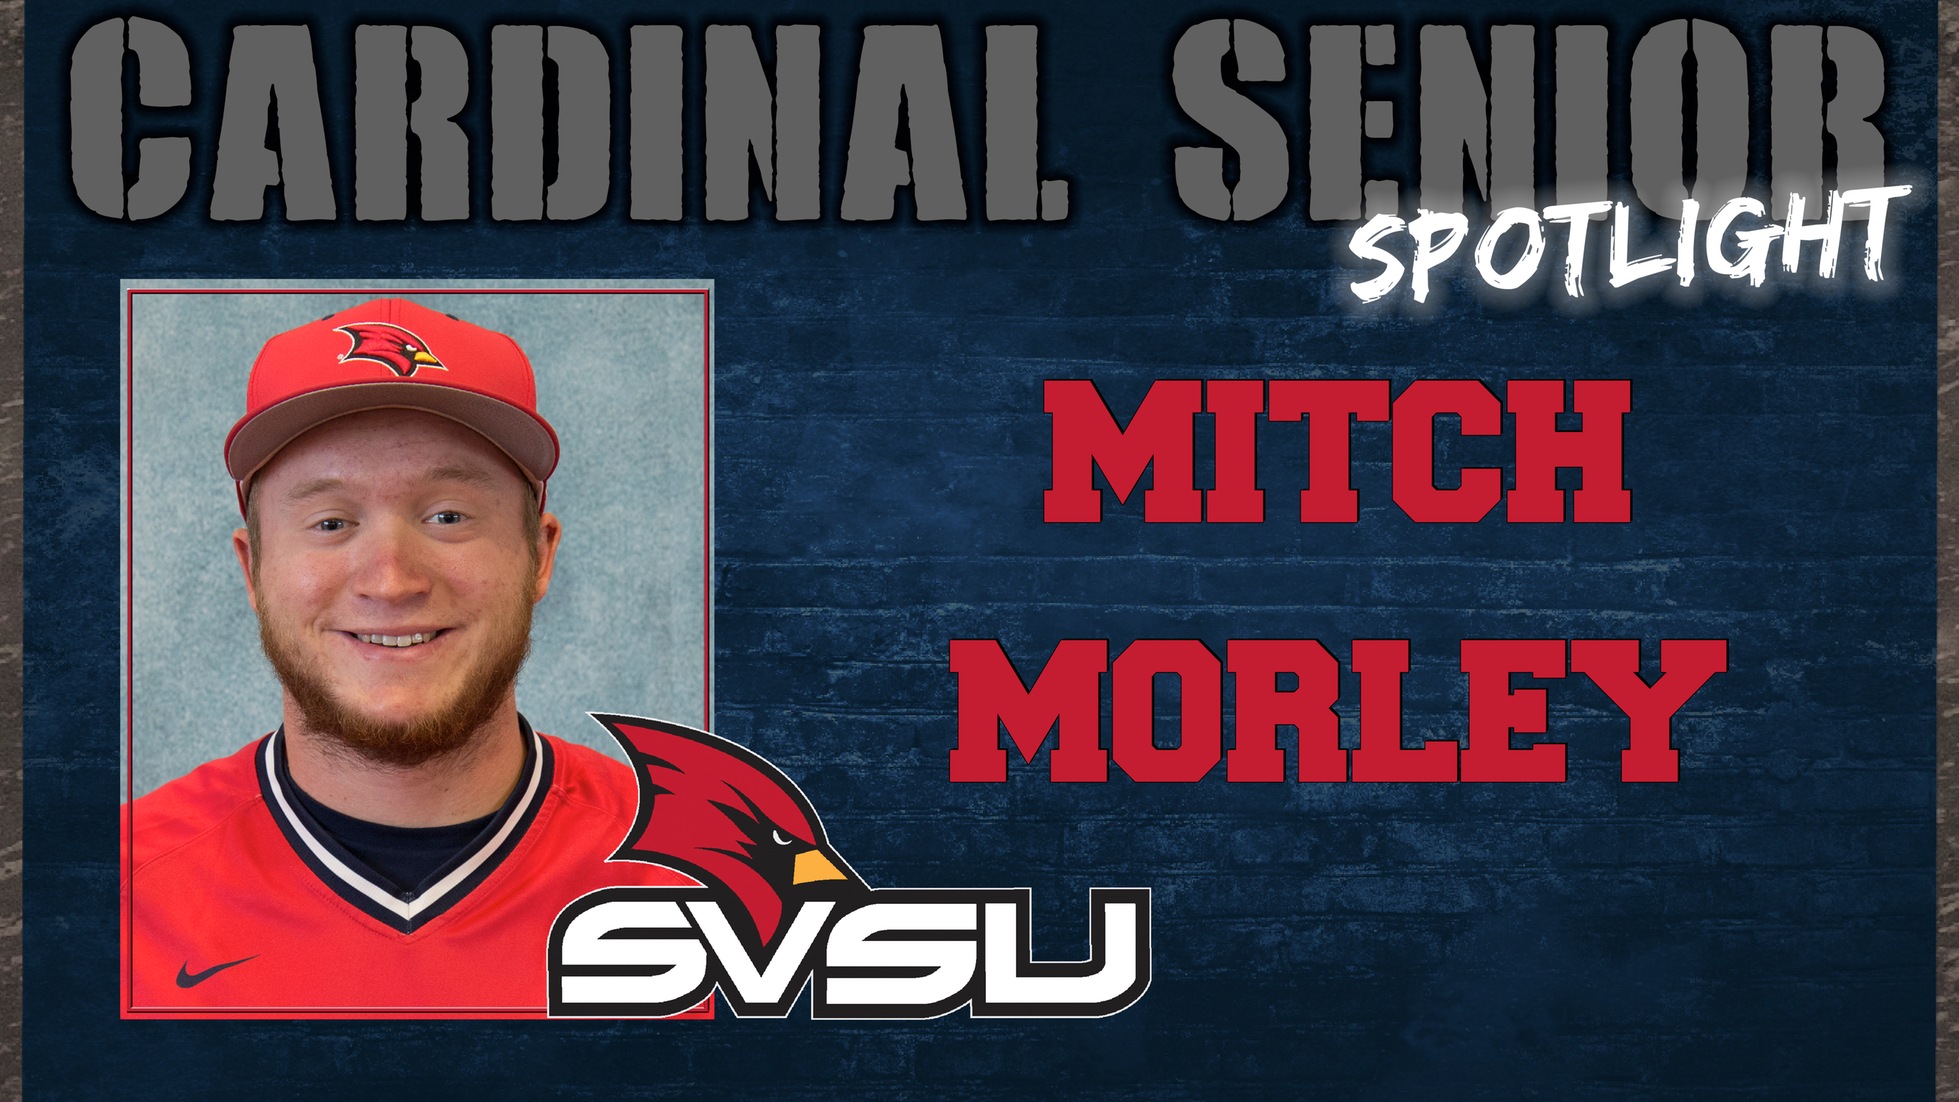 SVSU Cardinal Senior Spotlight - Mitch Morley